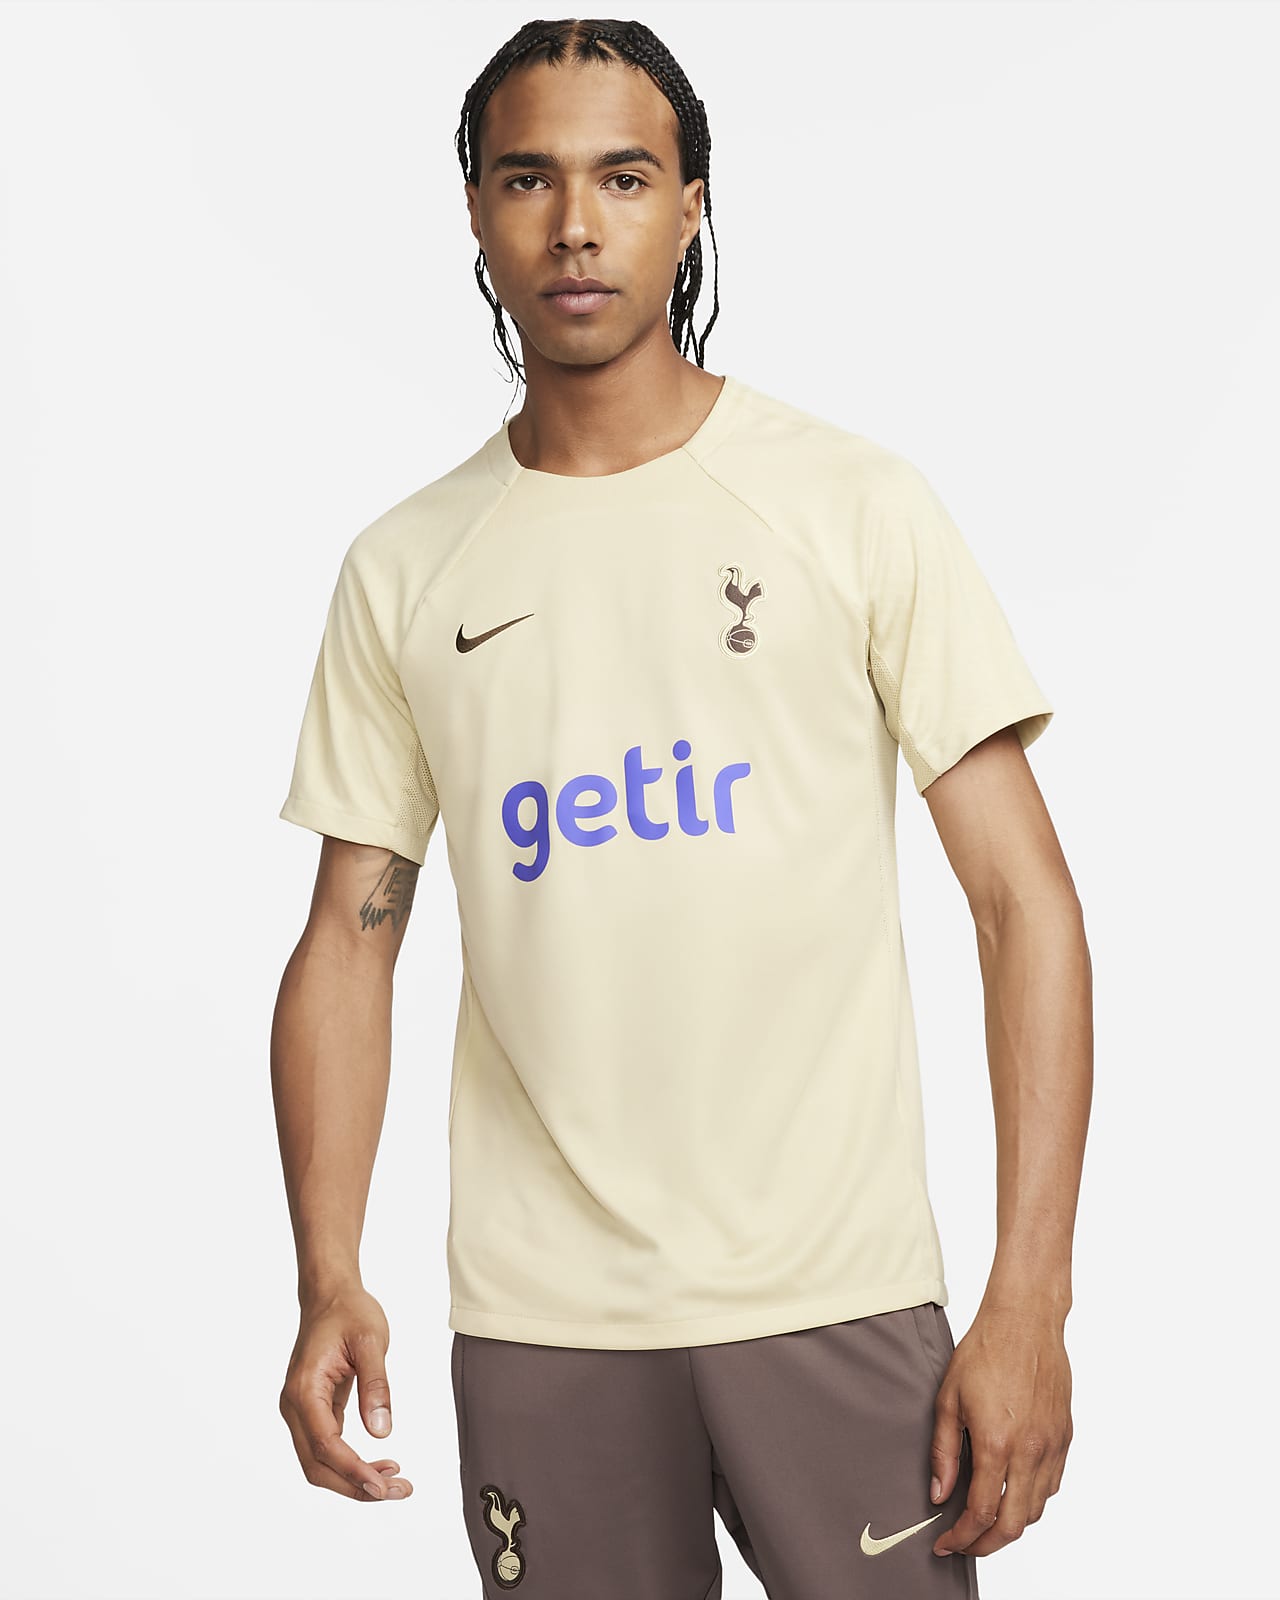 Ανδρική κοντομάνικη ποδοσφαιρική πλεκτή μπλούζα Nike Dri-FIT εναλλακτικής εμφάνισης Τότεναμ Strike